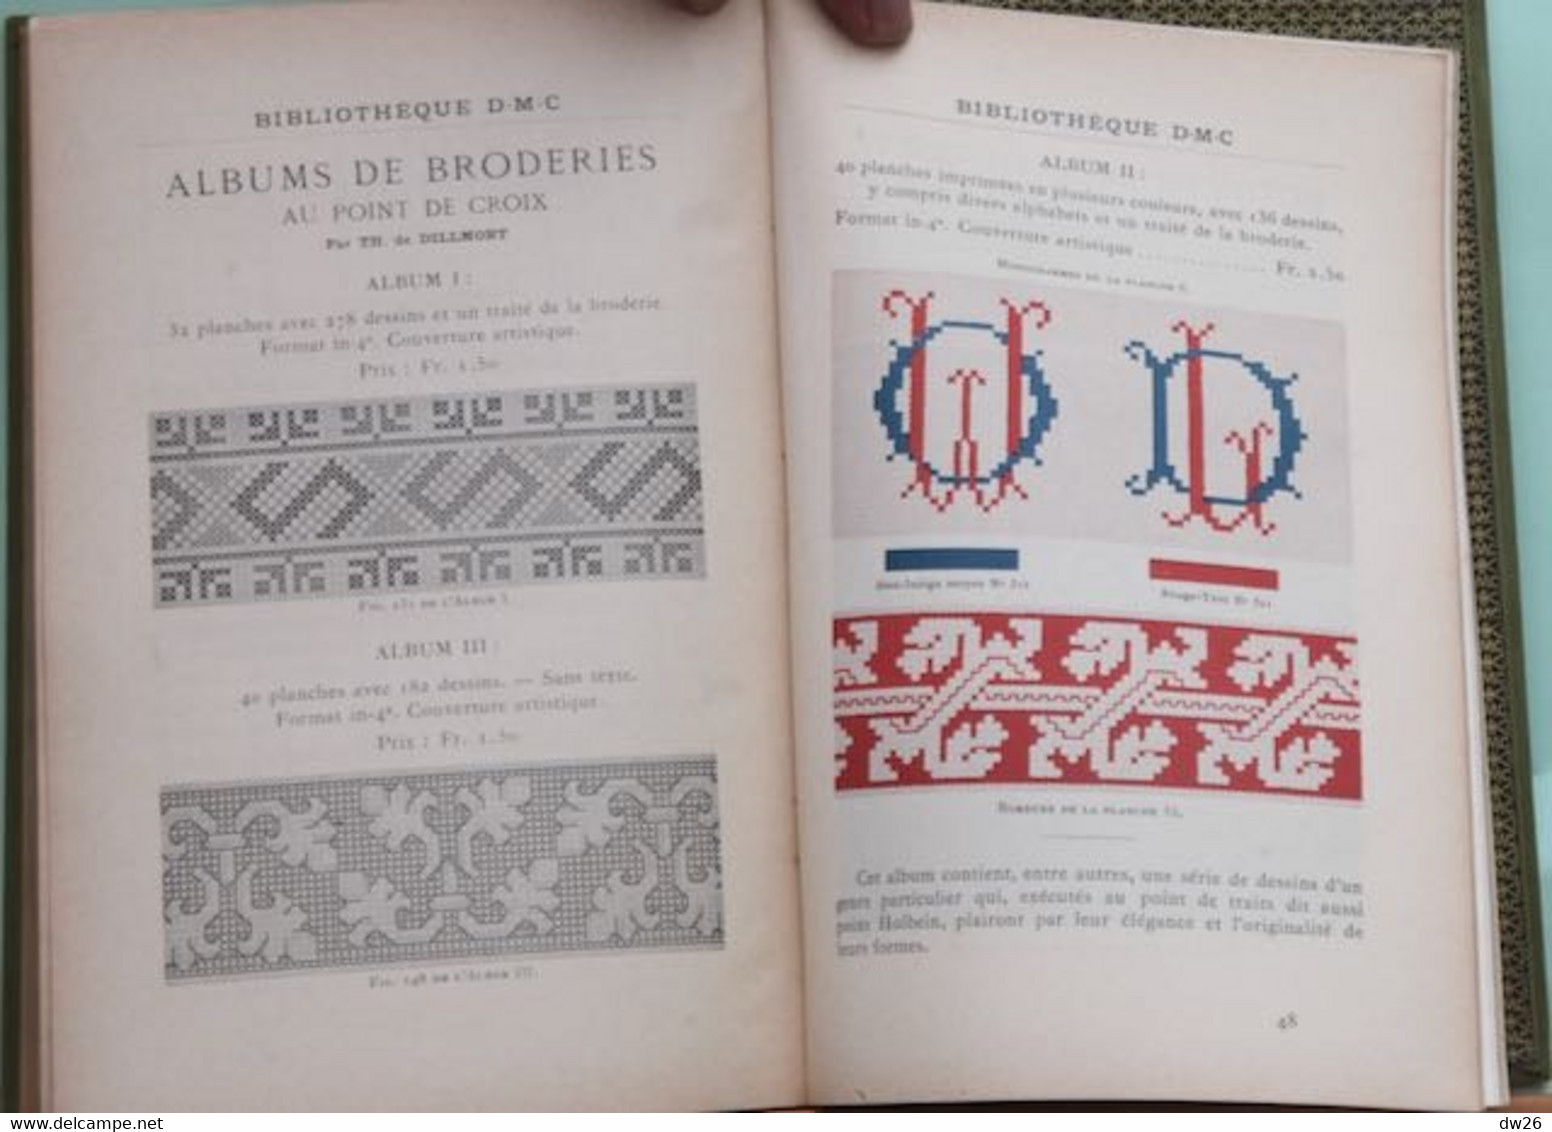 Livre D.M.C. 1936: Encyclopédie des Ouvrages de Dames par Thérèse de Dillmont (couture, Broderie, Crochet...)